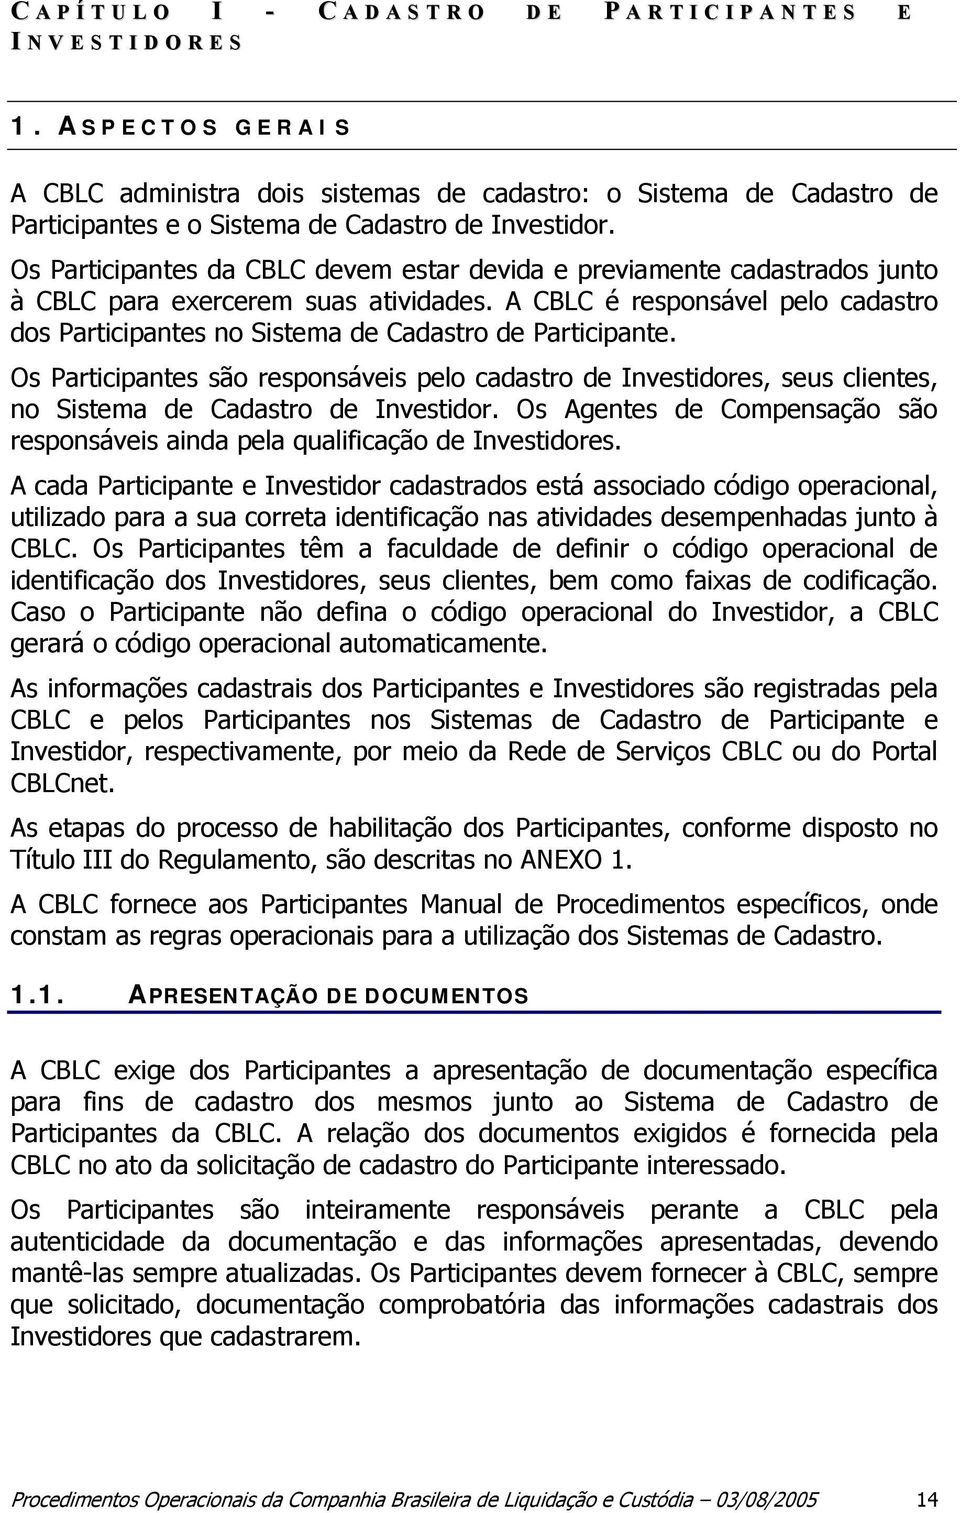 Os Participantes da CBLC devem estar devida e previamente cadastrados junto à CBLC para exercerem suas atividades.